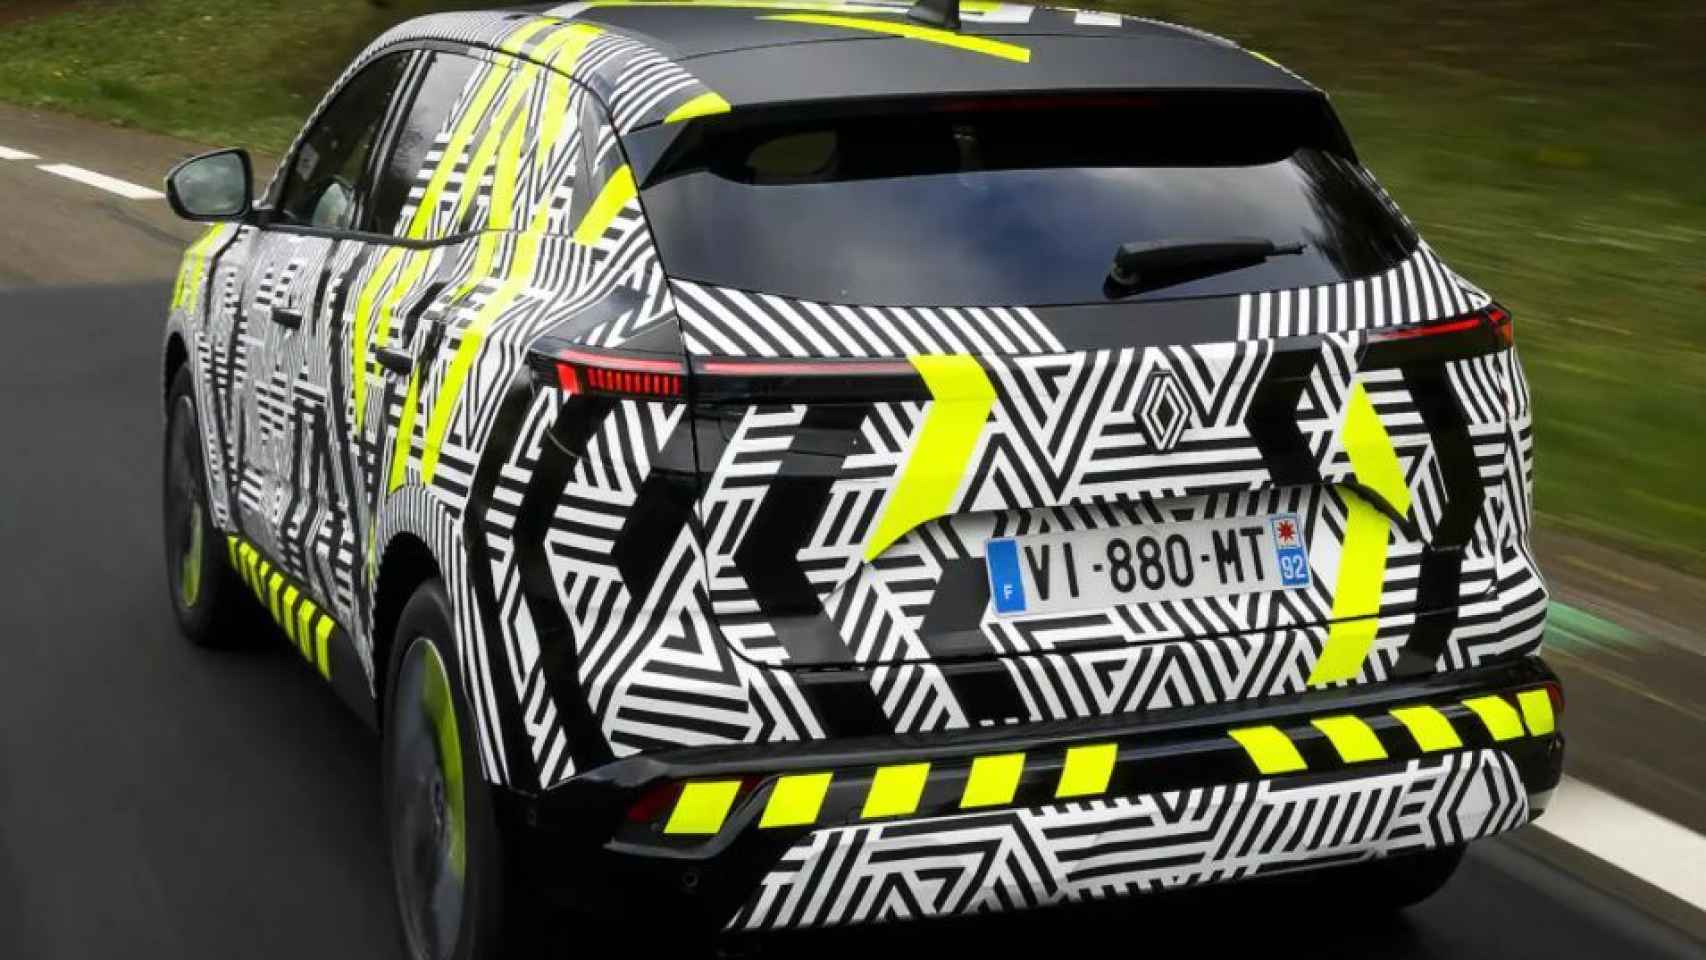 La fábrica del rombo presentará oficialmente el Renault Austral el próximo 8 de marzo